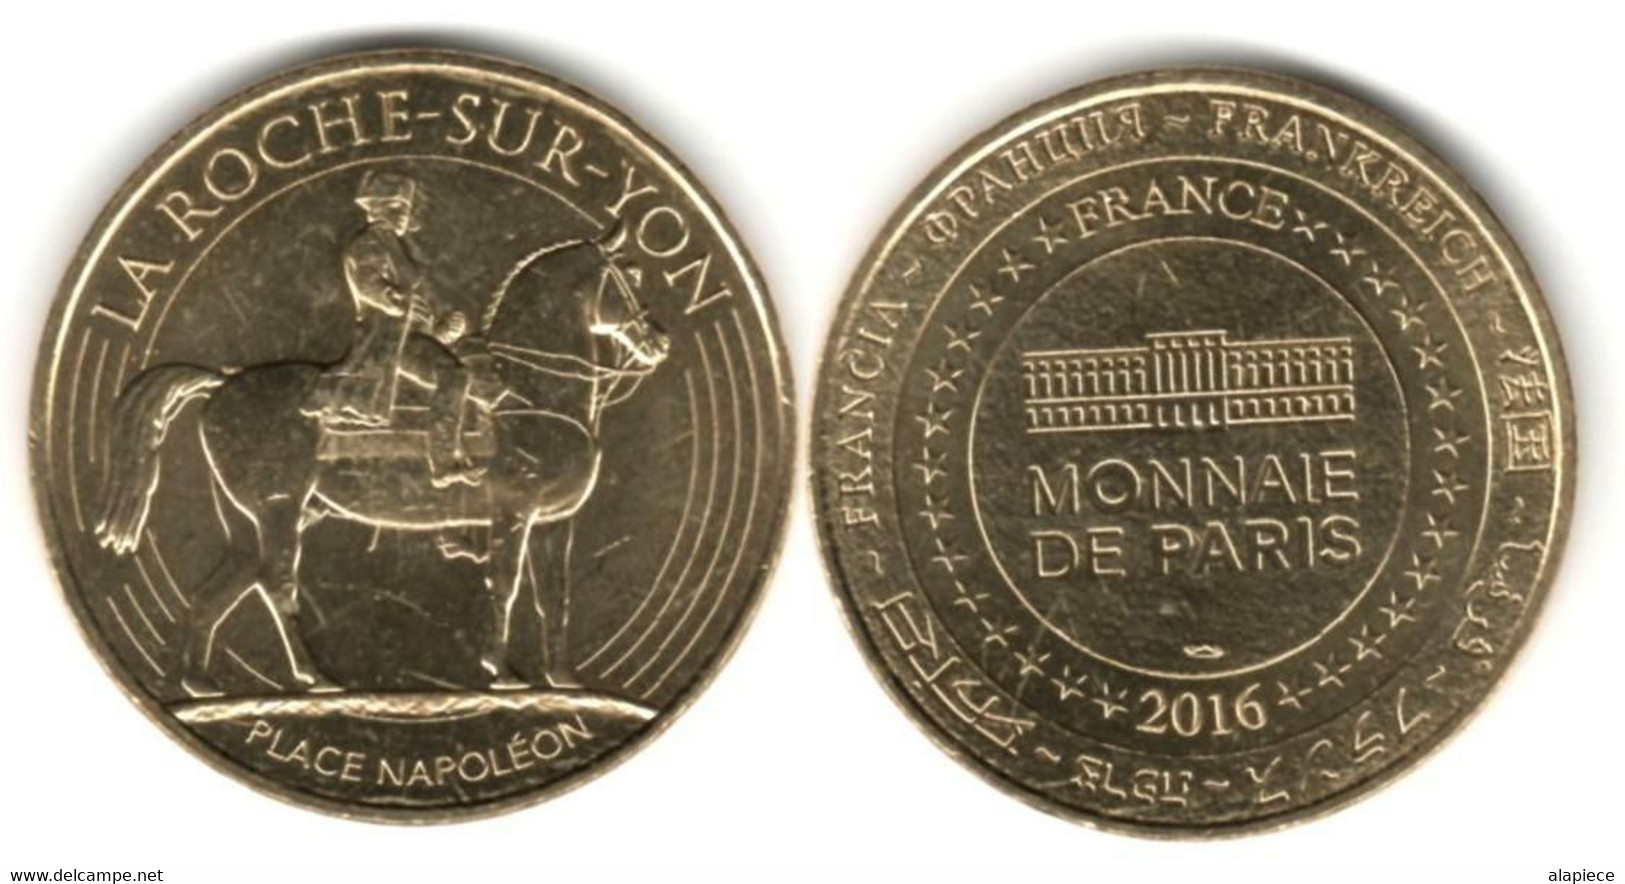 France - Monnaie De Paris - 2016 - La Roche-Sur-Yon - Place Napoléon - 2016